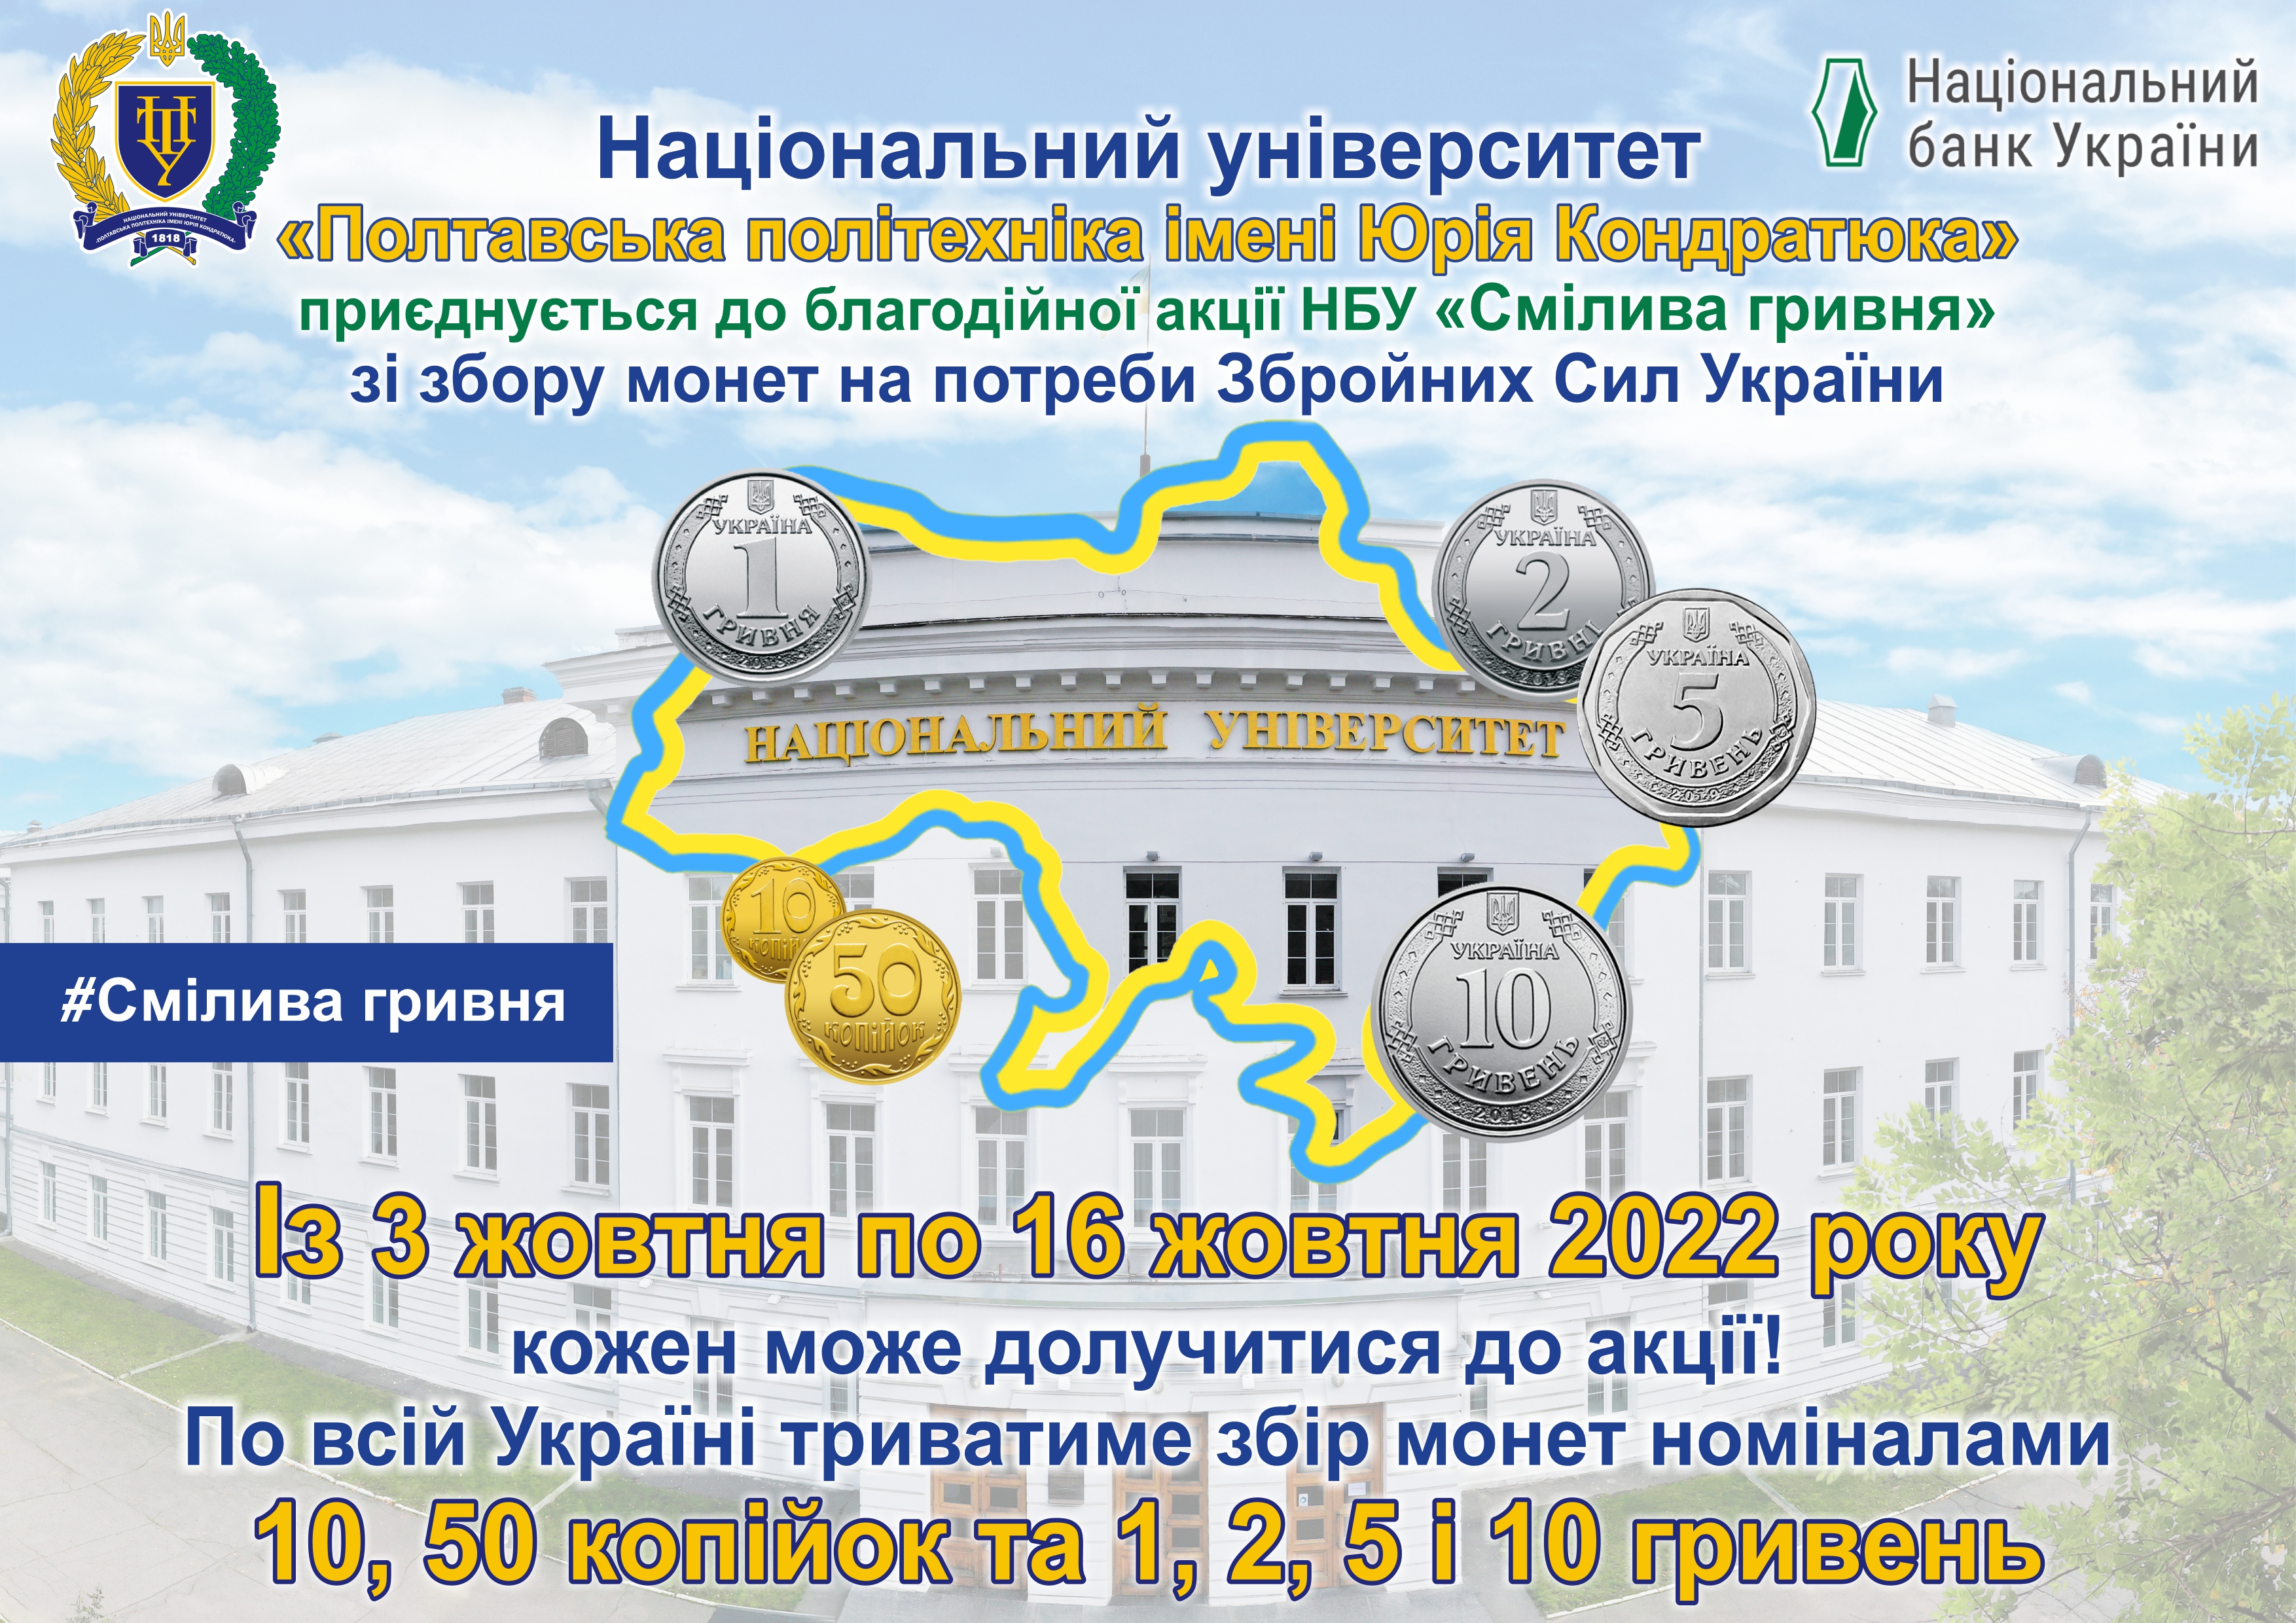 «Смілива гривня»: політехніка бере участь у благодійній акції Національного банку України